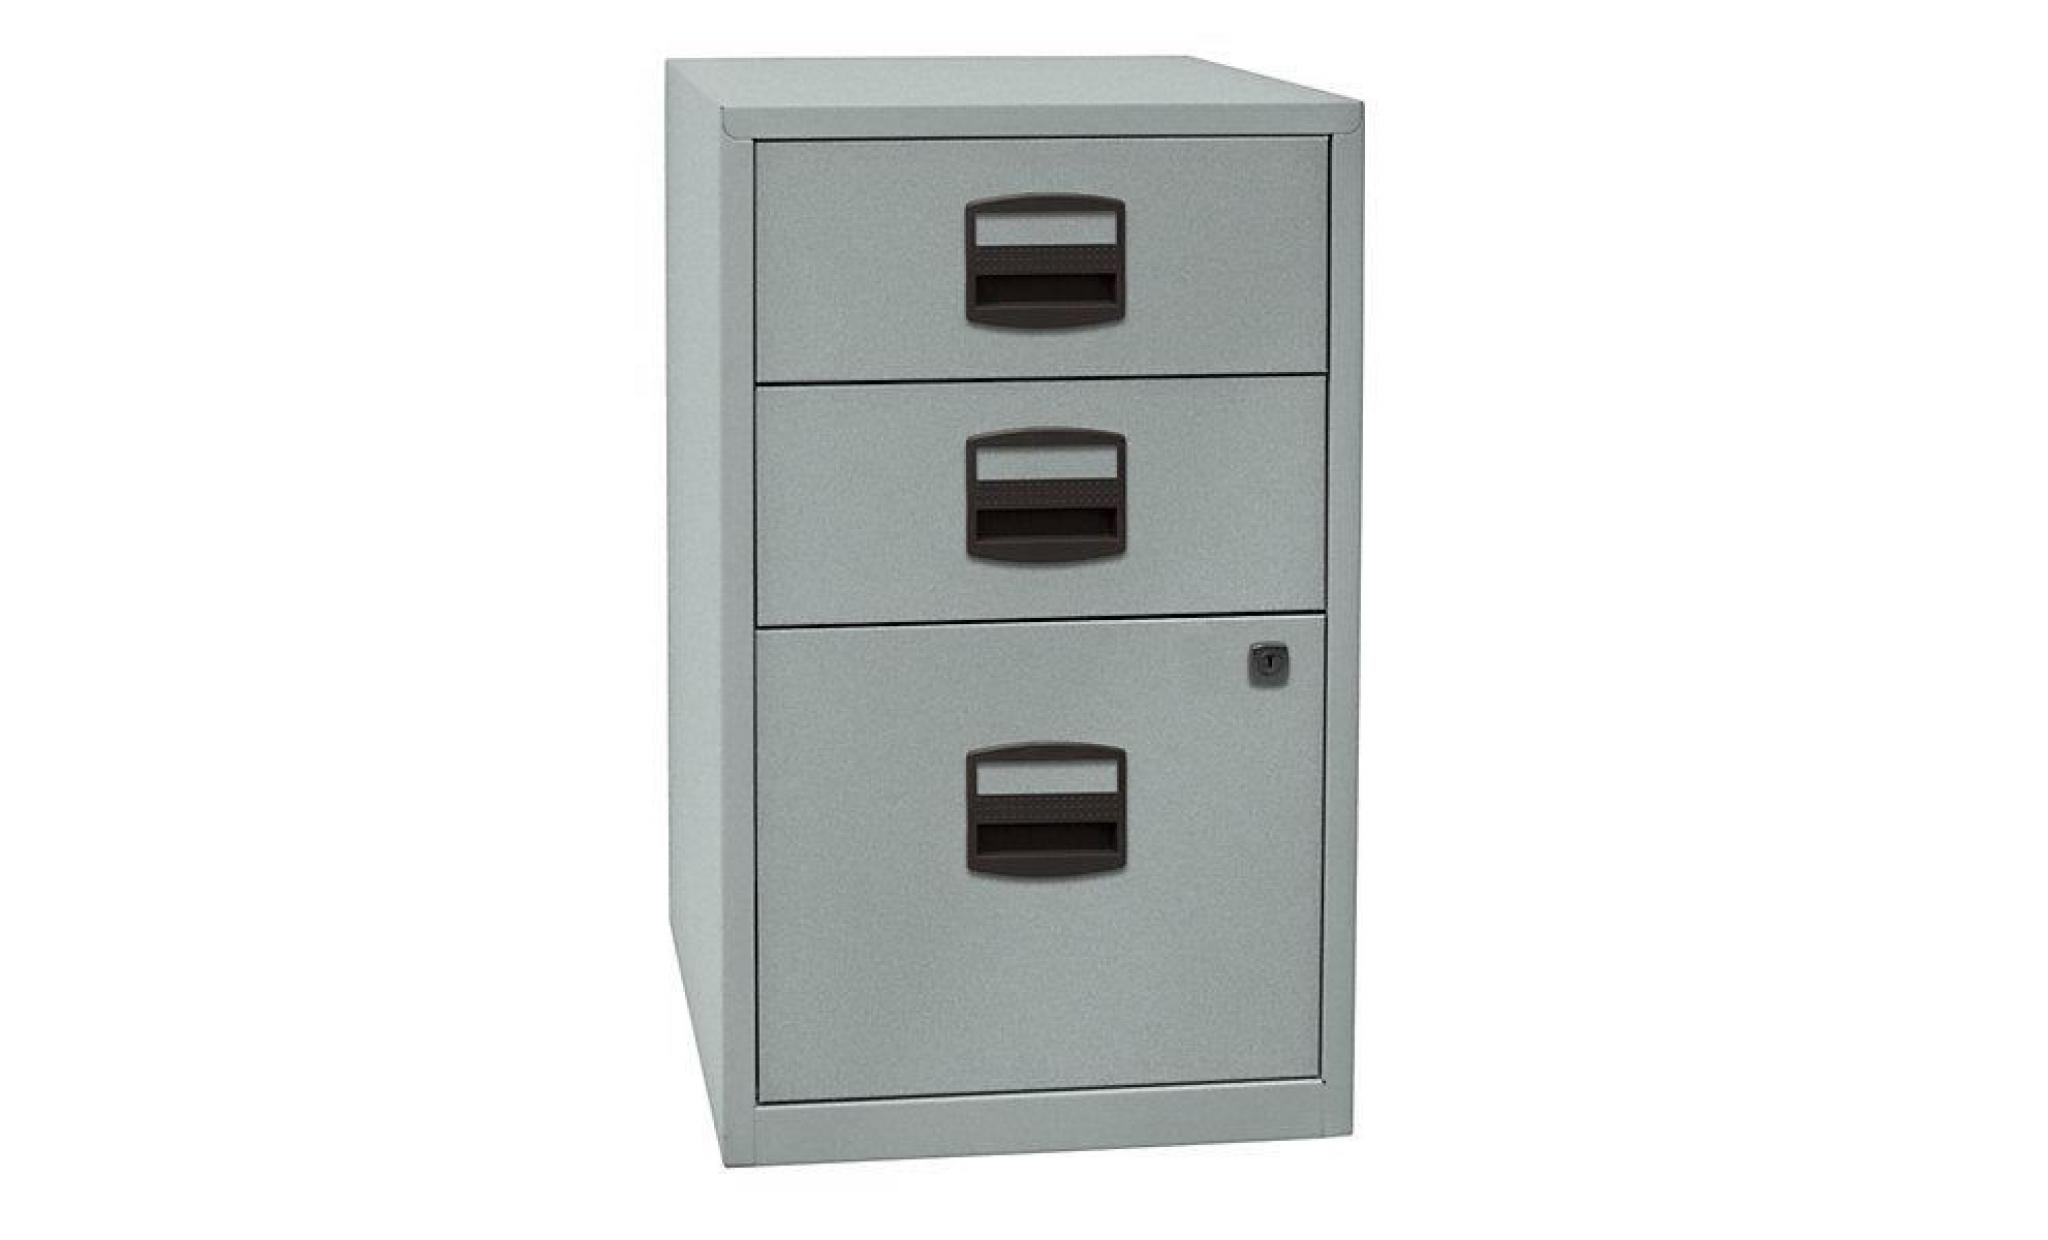 armoire hauteur bureau pfa   2 tiroirs, 1 tiroir pour ds gris clair   armoire basse armoire de bureau armoire à tiroirs armoires